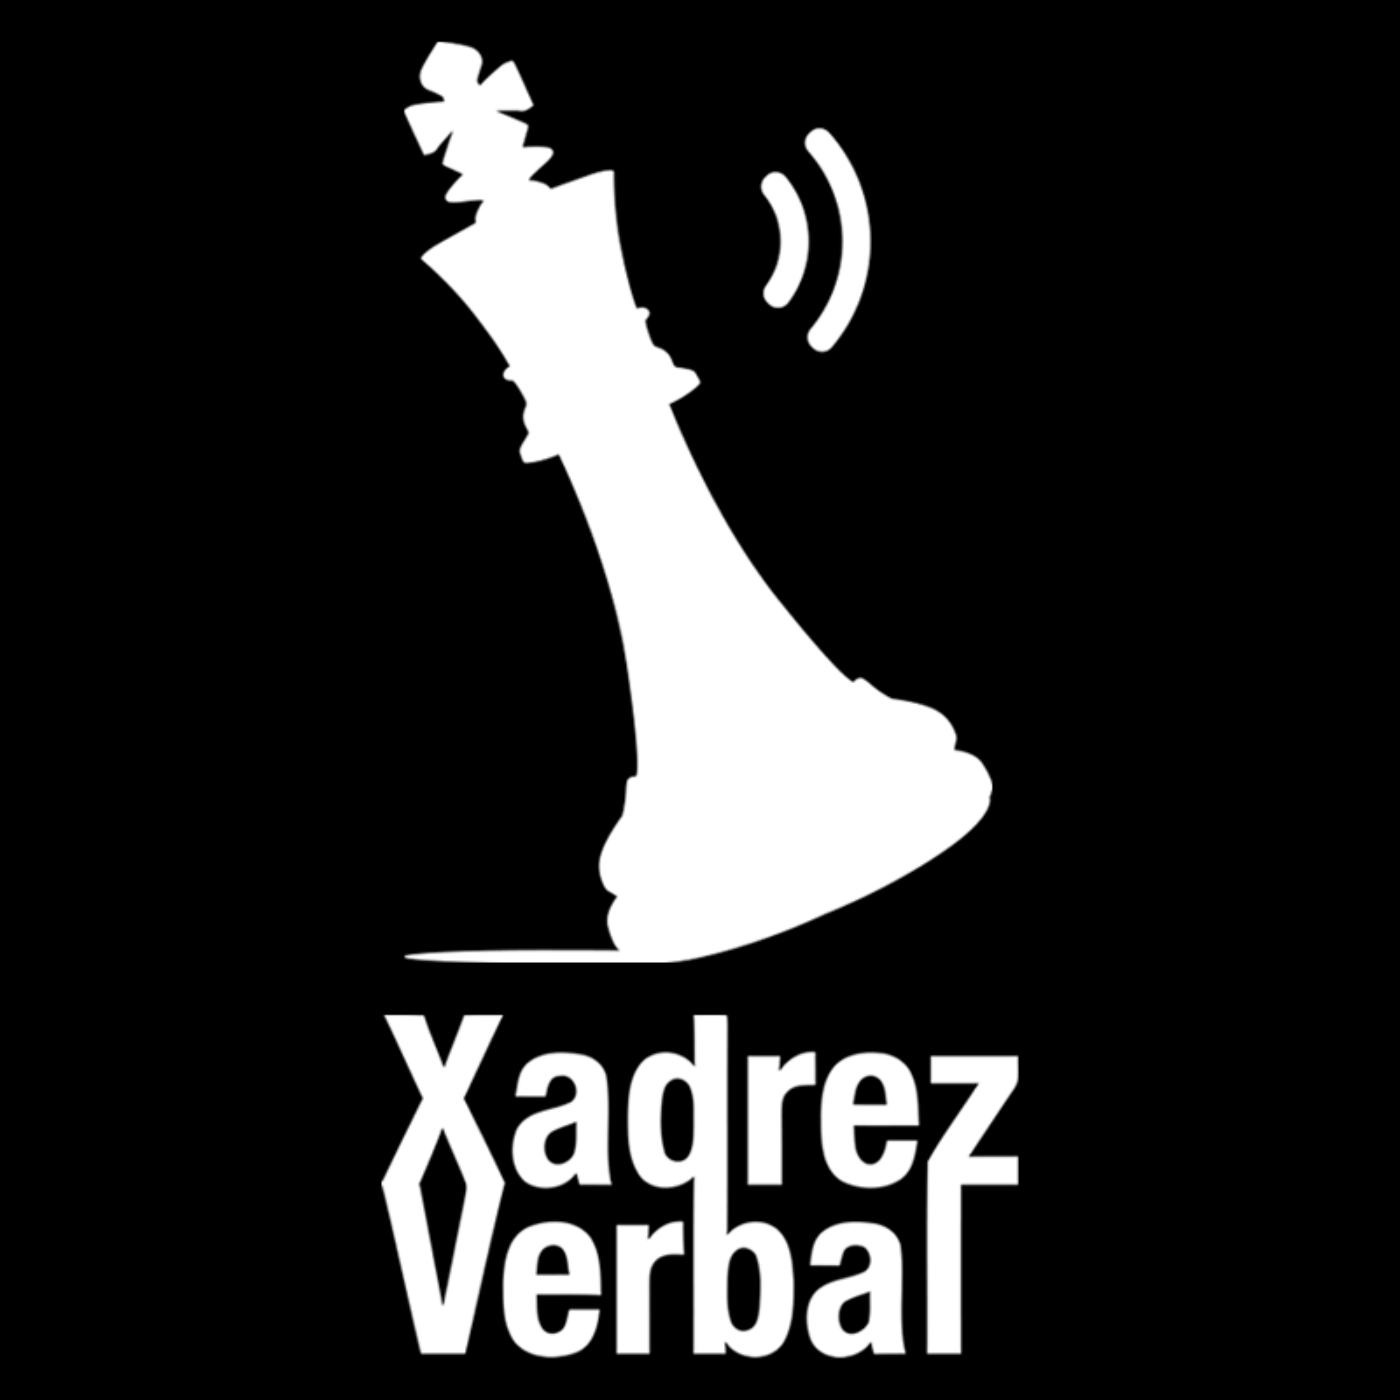 Xadrez Verbal – Podcast – Podtail